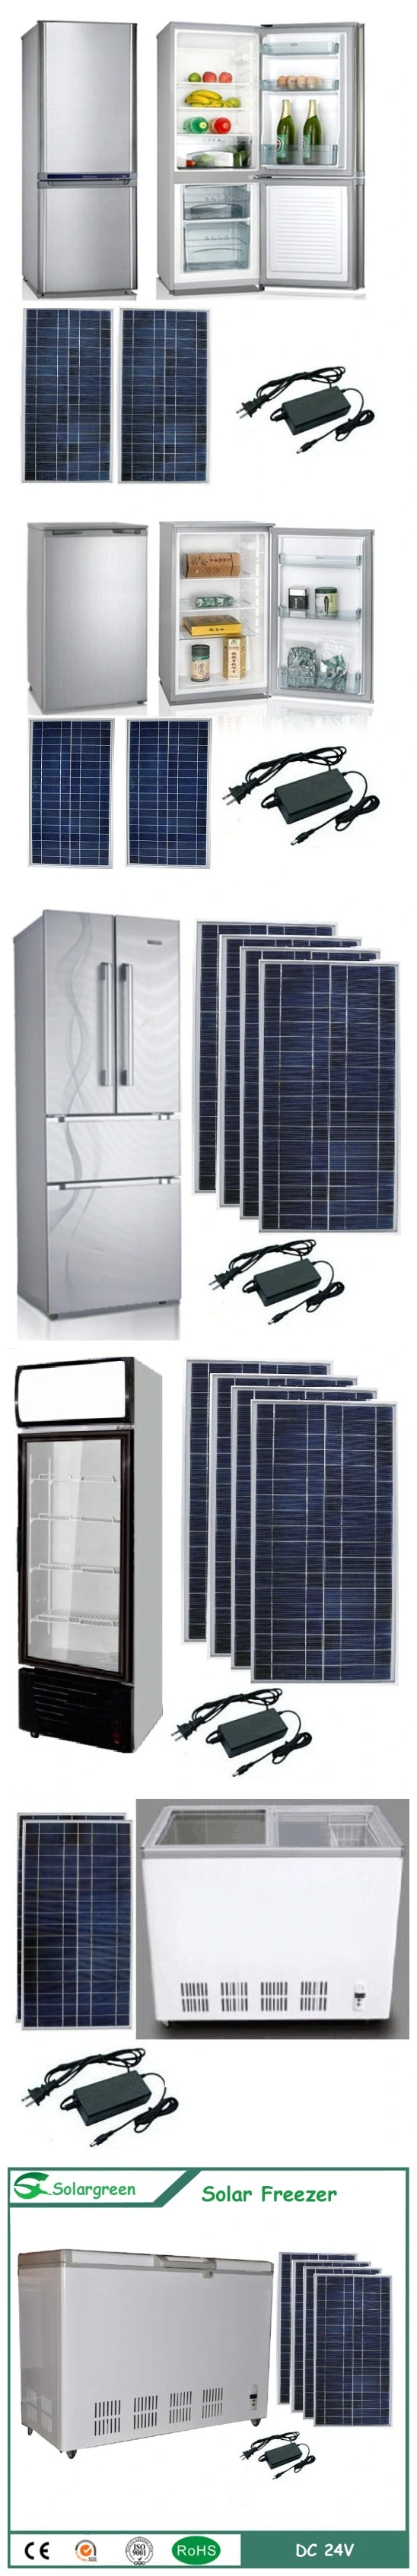 142L Factory Price 12/24V DC Compressor Solar Freezer Fridge Refrigerator